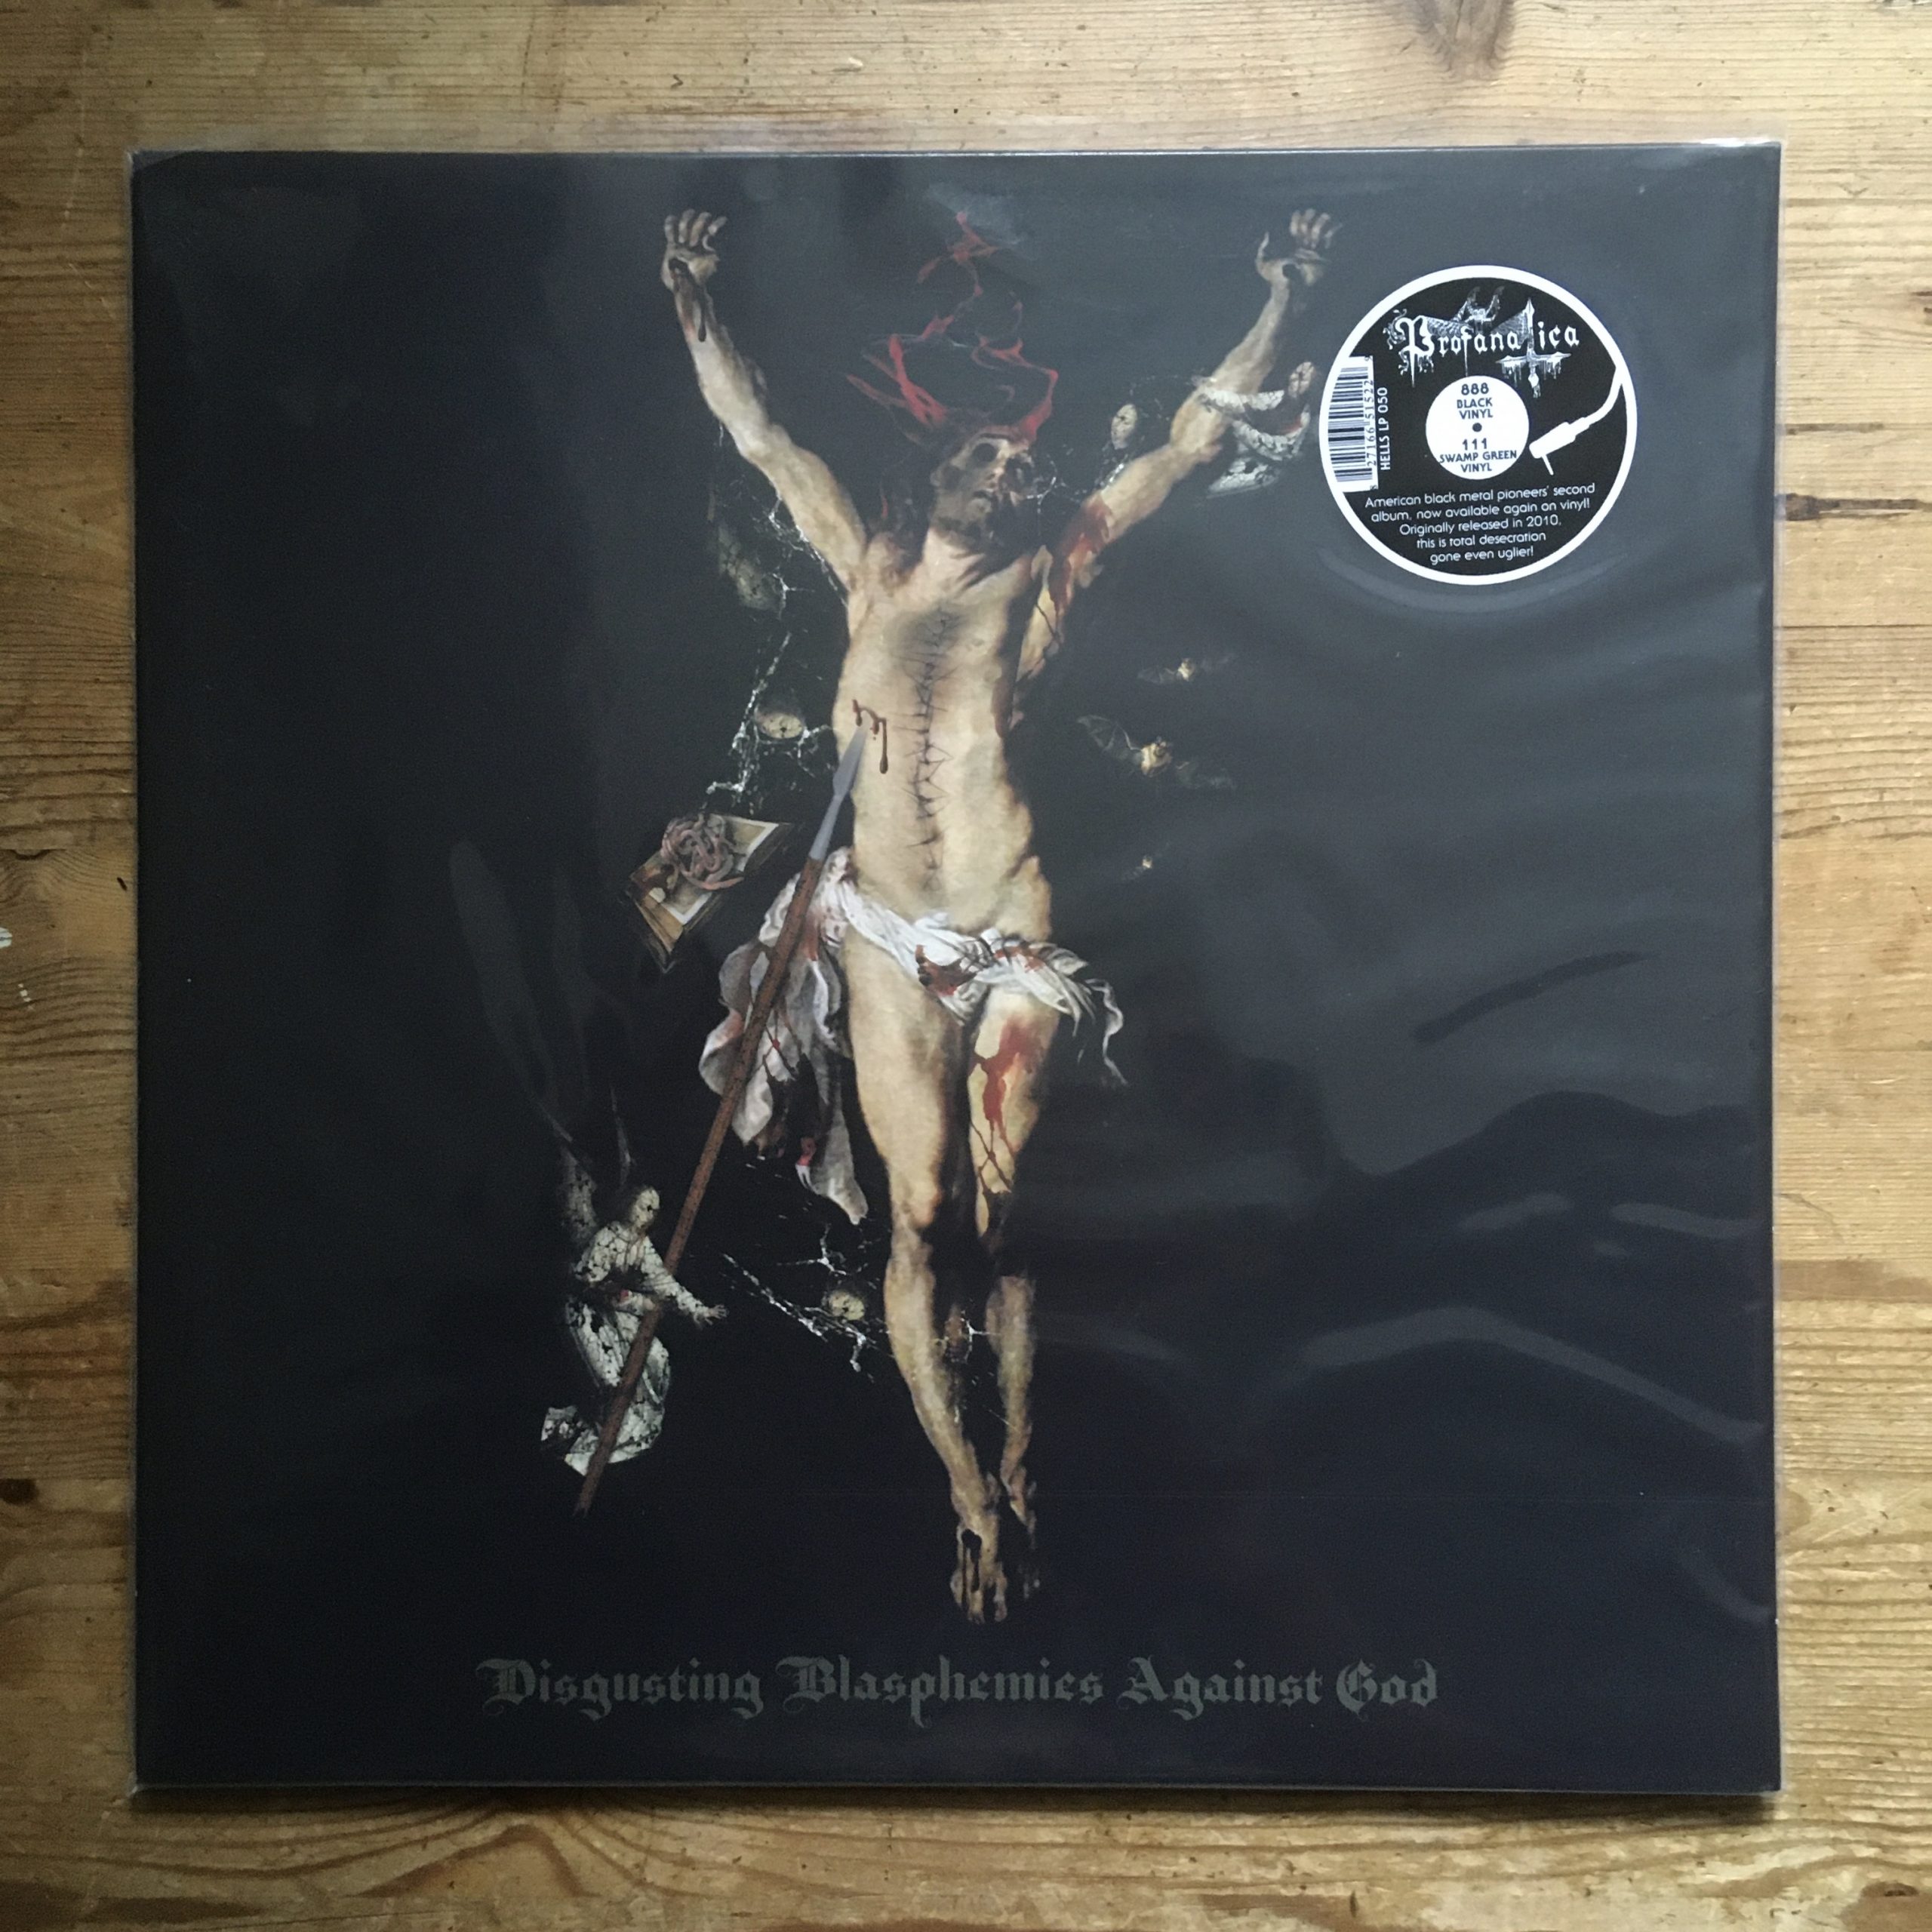 Photo of the Profanantica - "Disgusting Blasphemies Against God" LP (Black vinyl)